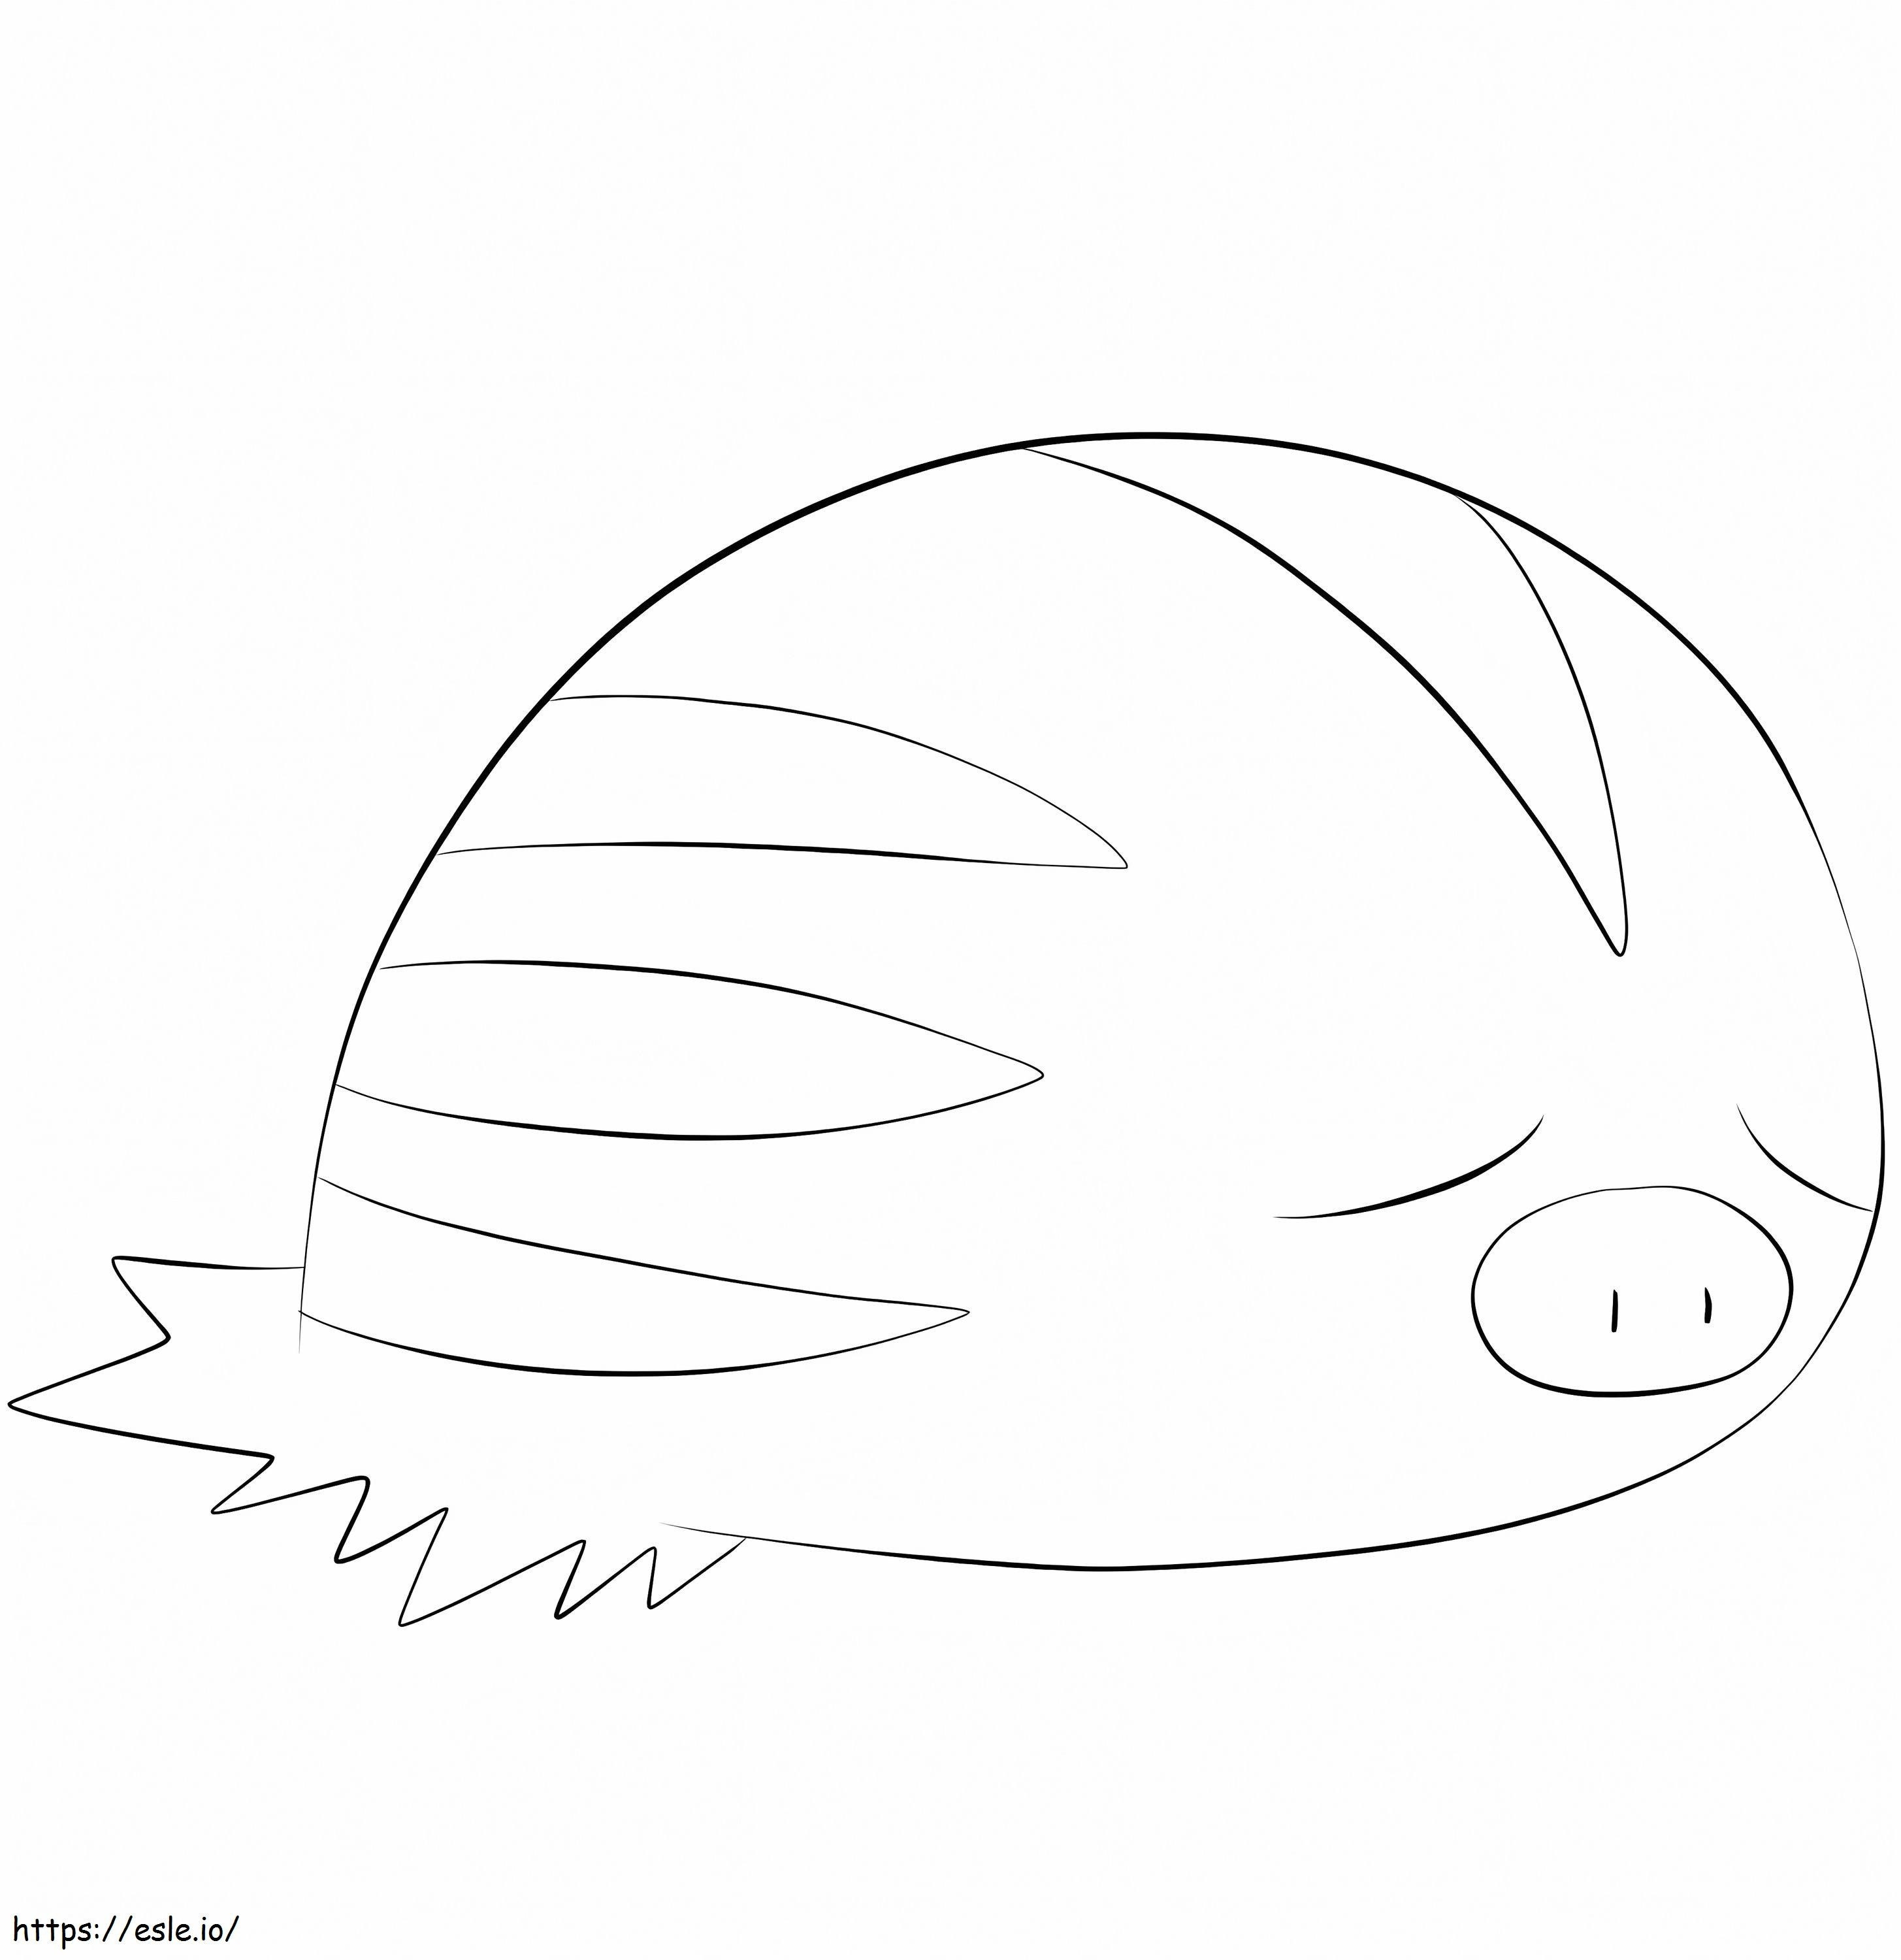 Swinub Um Pokémon para colorir